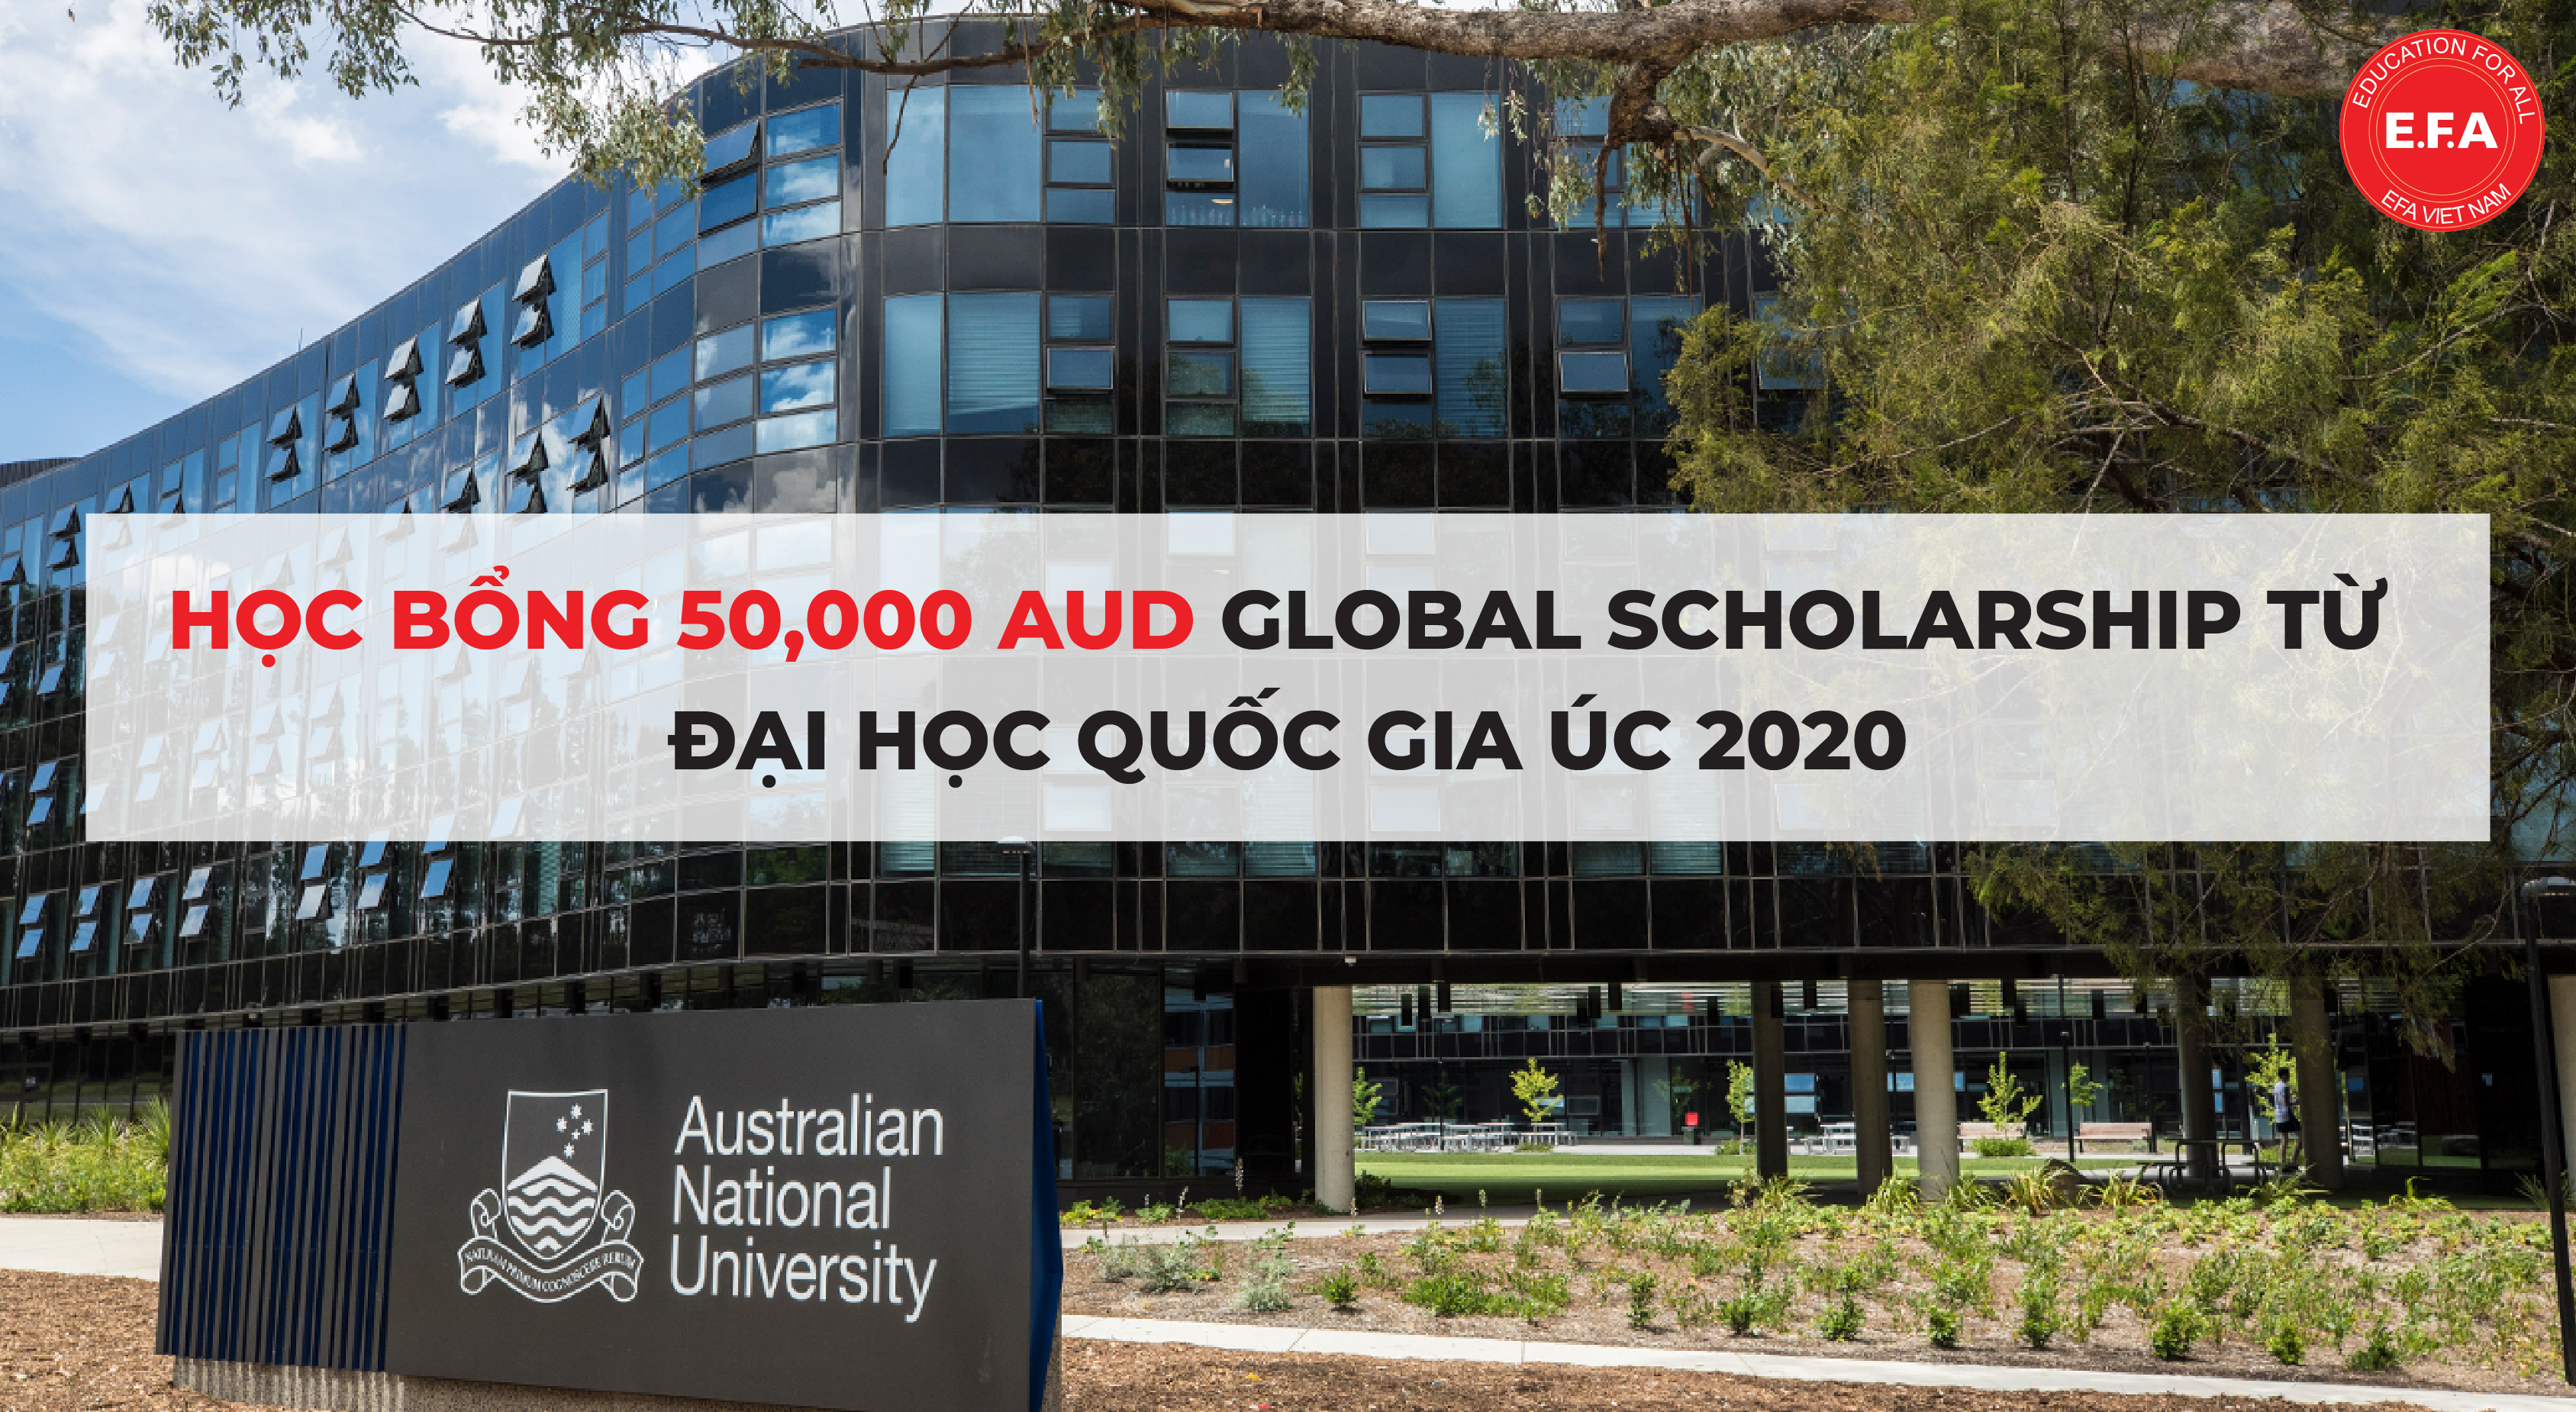 Học bổng 50,000AUD Global Scholarship từ Đại học Quốc gia Úc (ANU) 2020